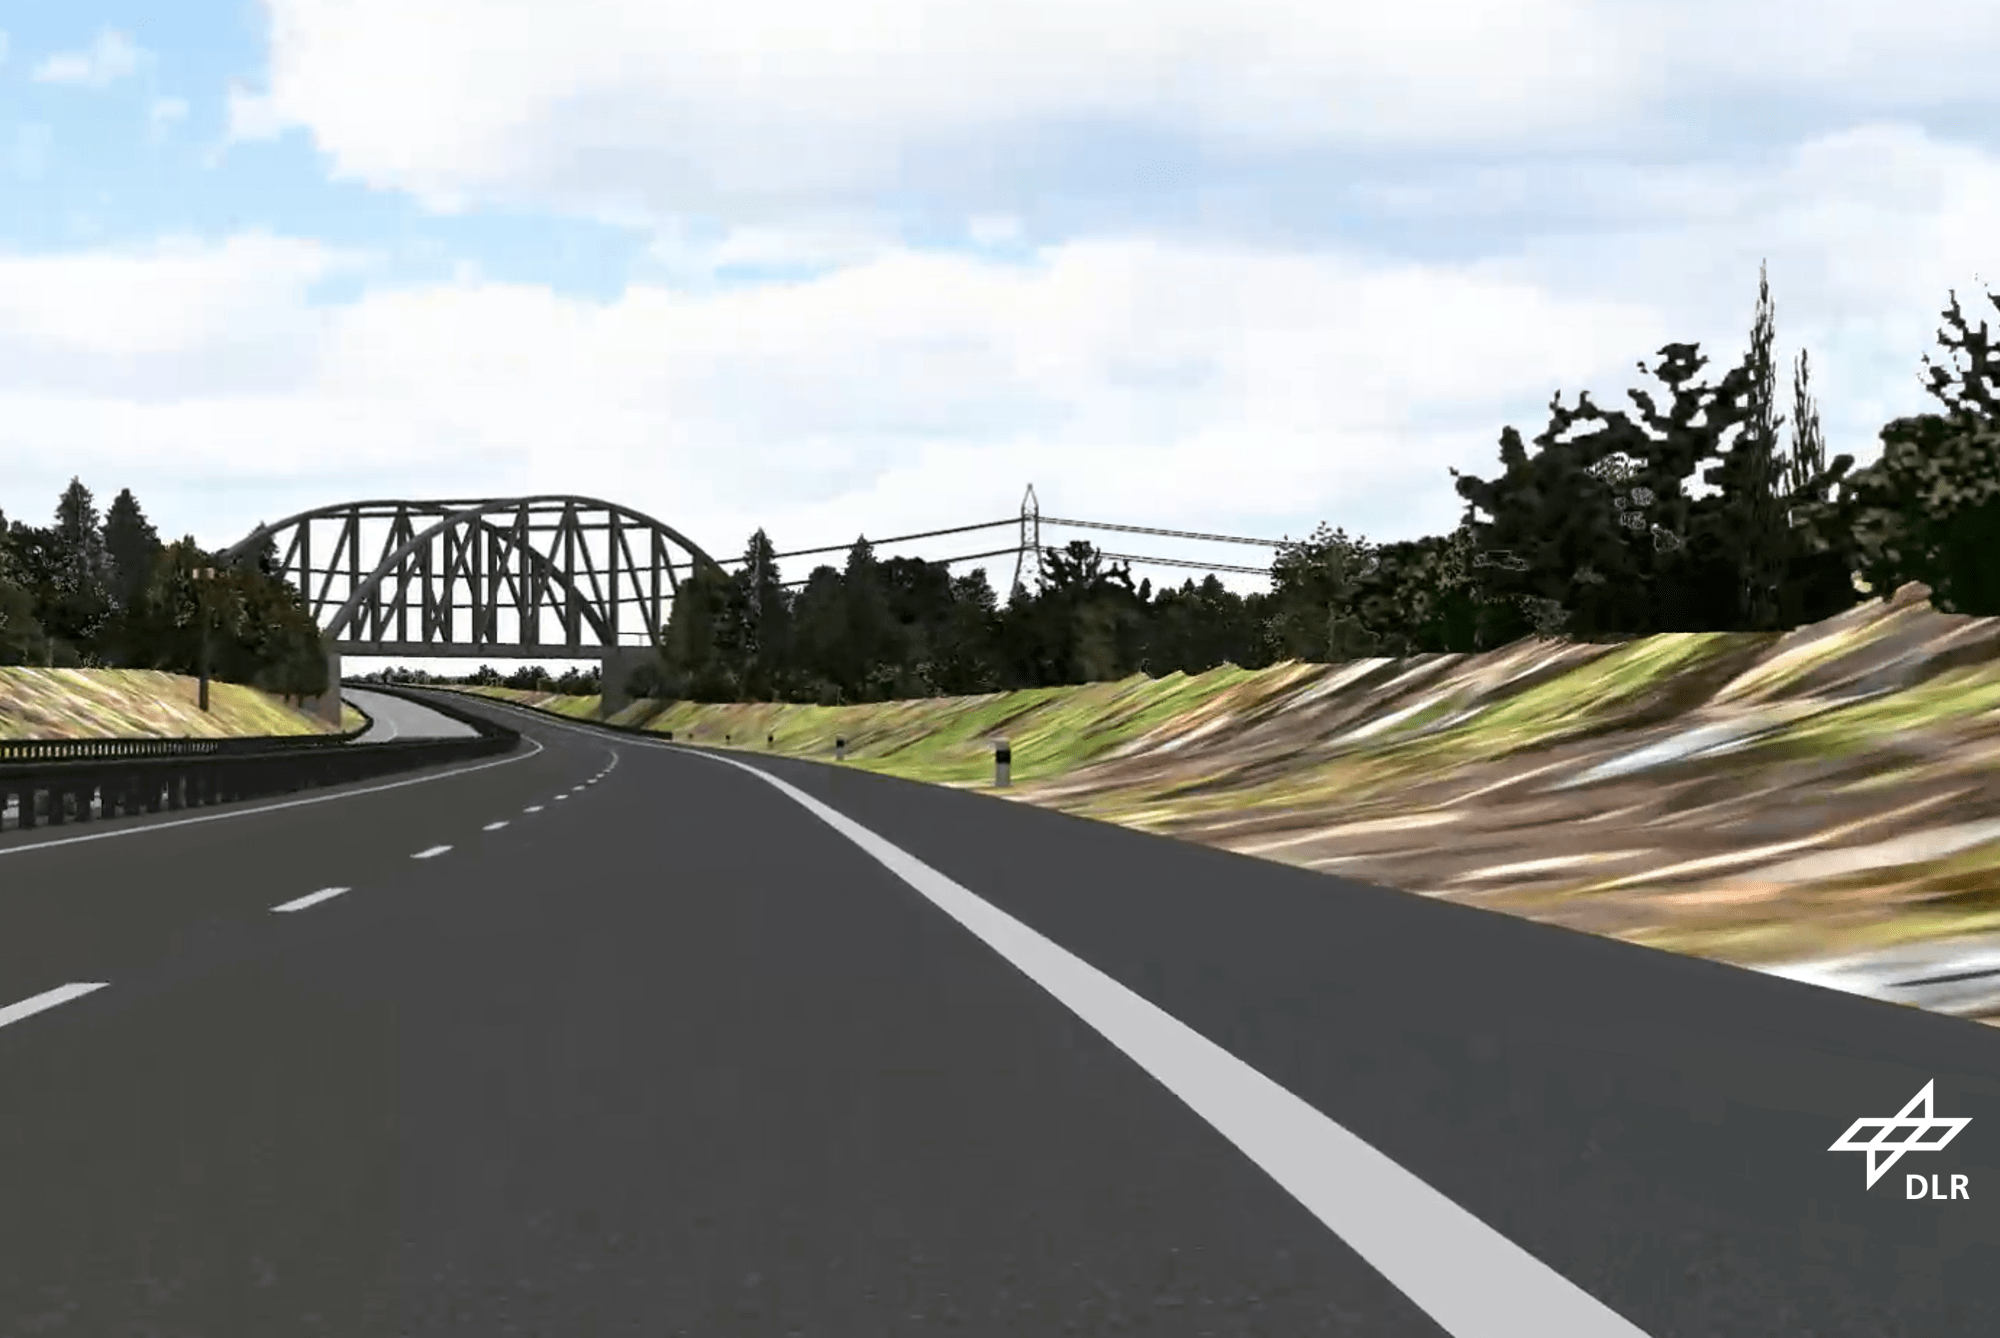 computerspiel-artige Darstellung eines Autobahnabschnitts